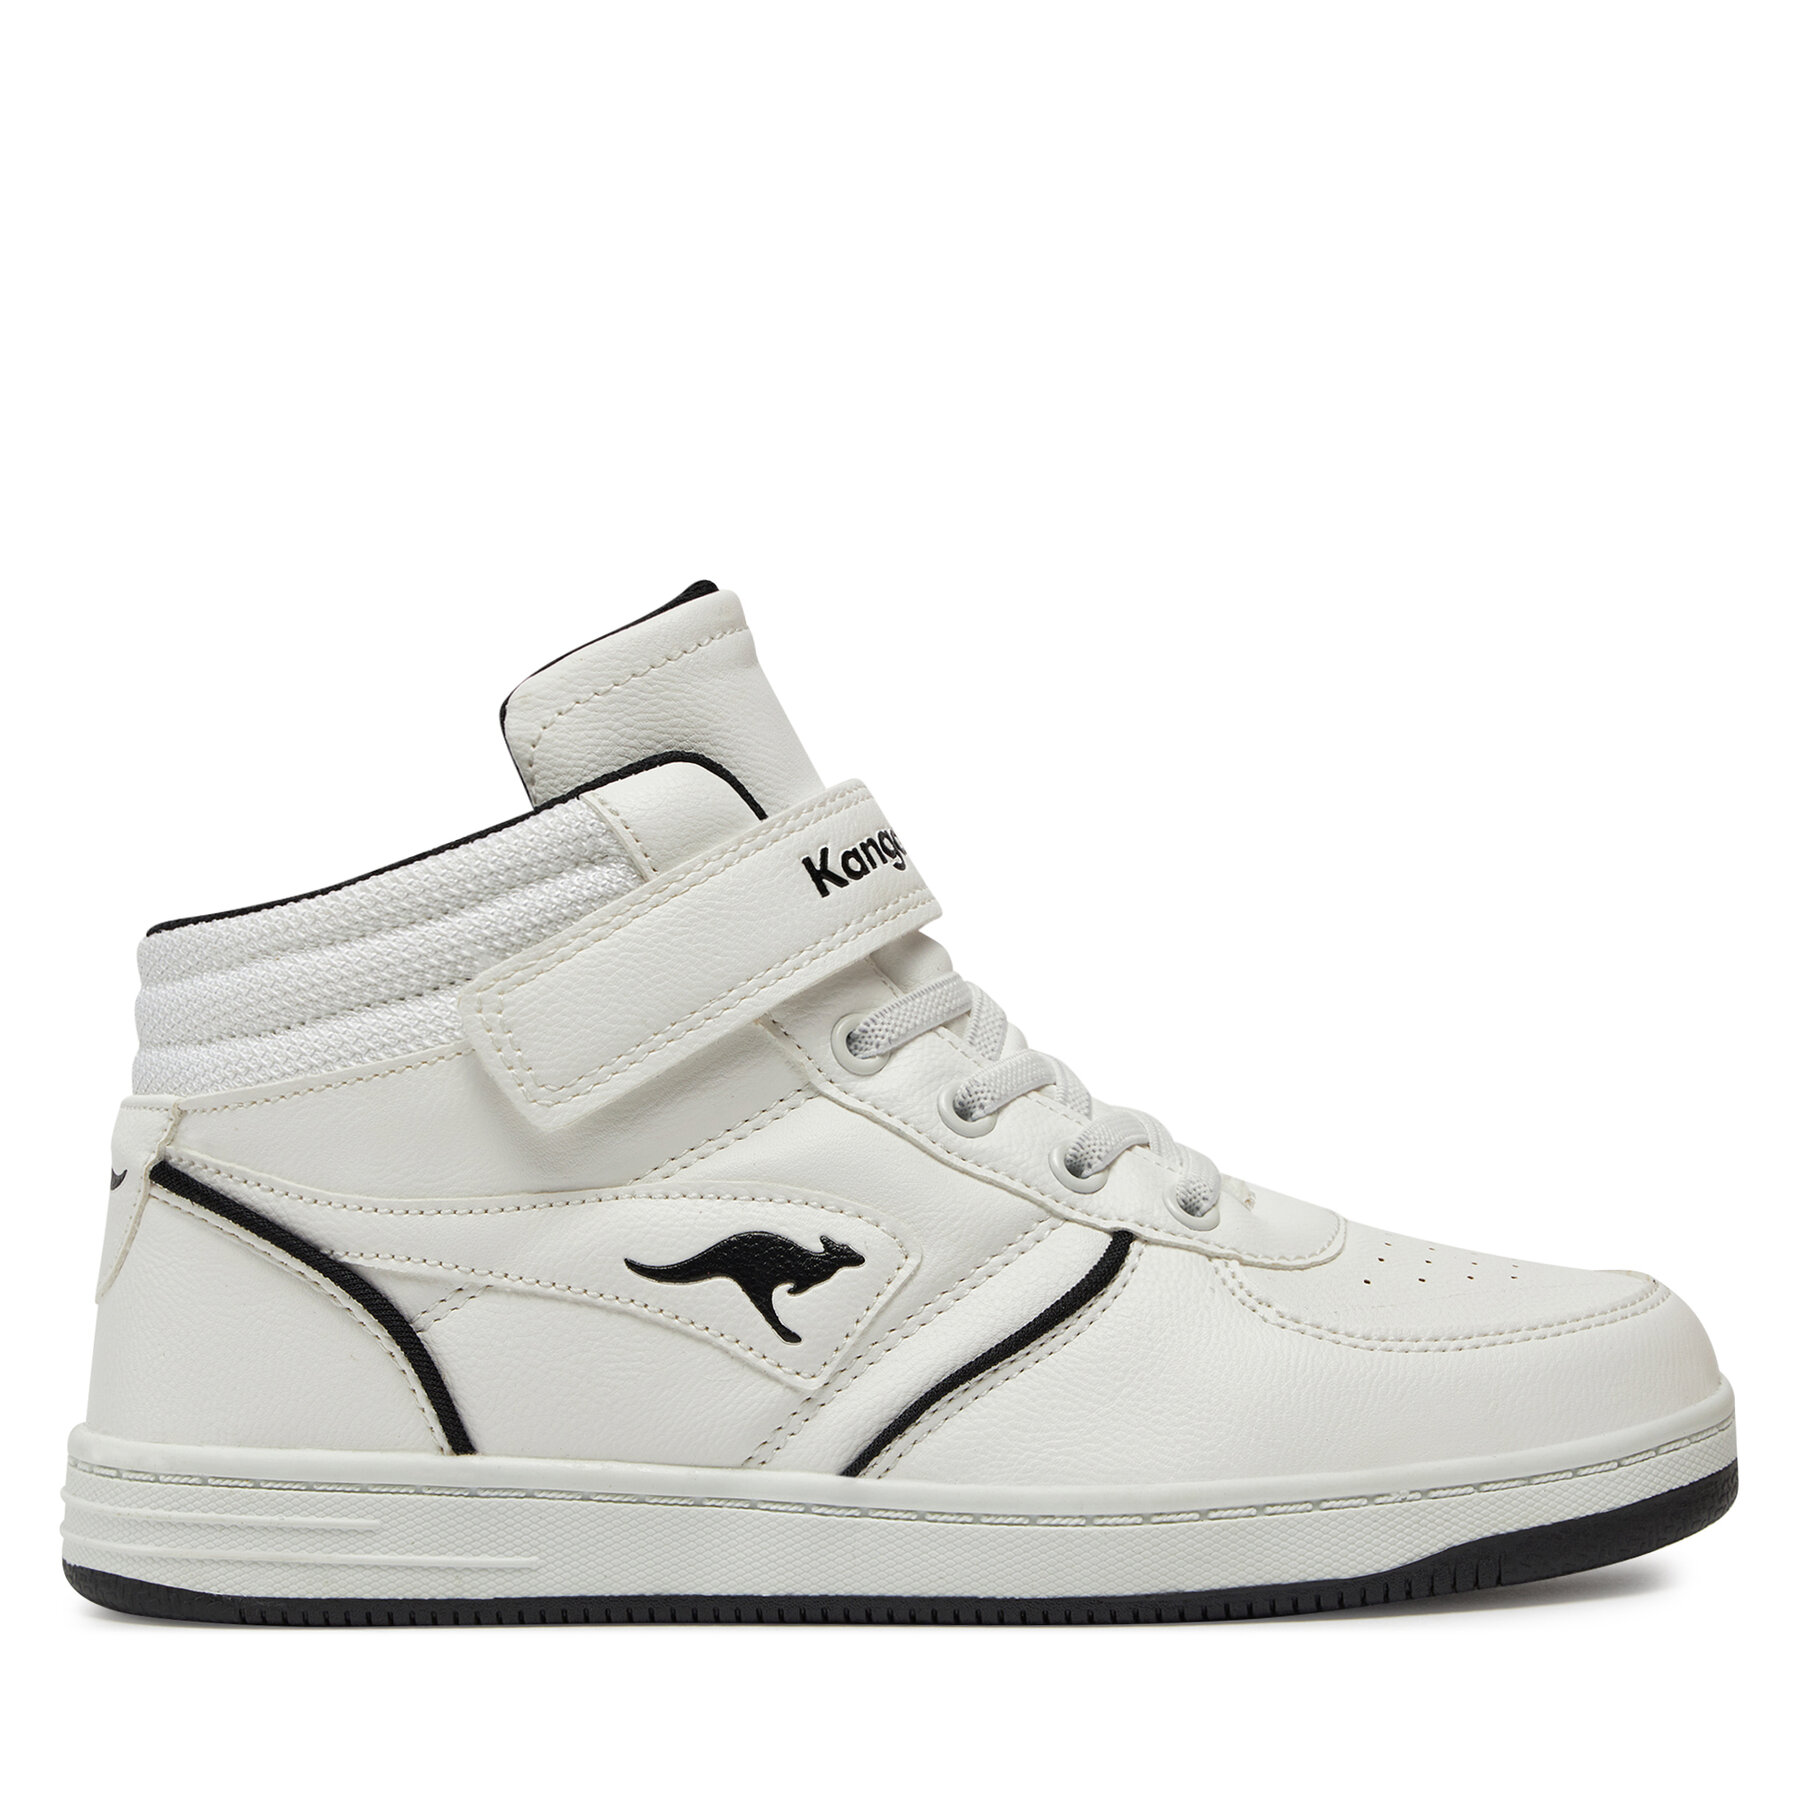 Sneakers KangaRoos K-Cp Flash Ev 18907 0500 White/Jet Black